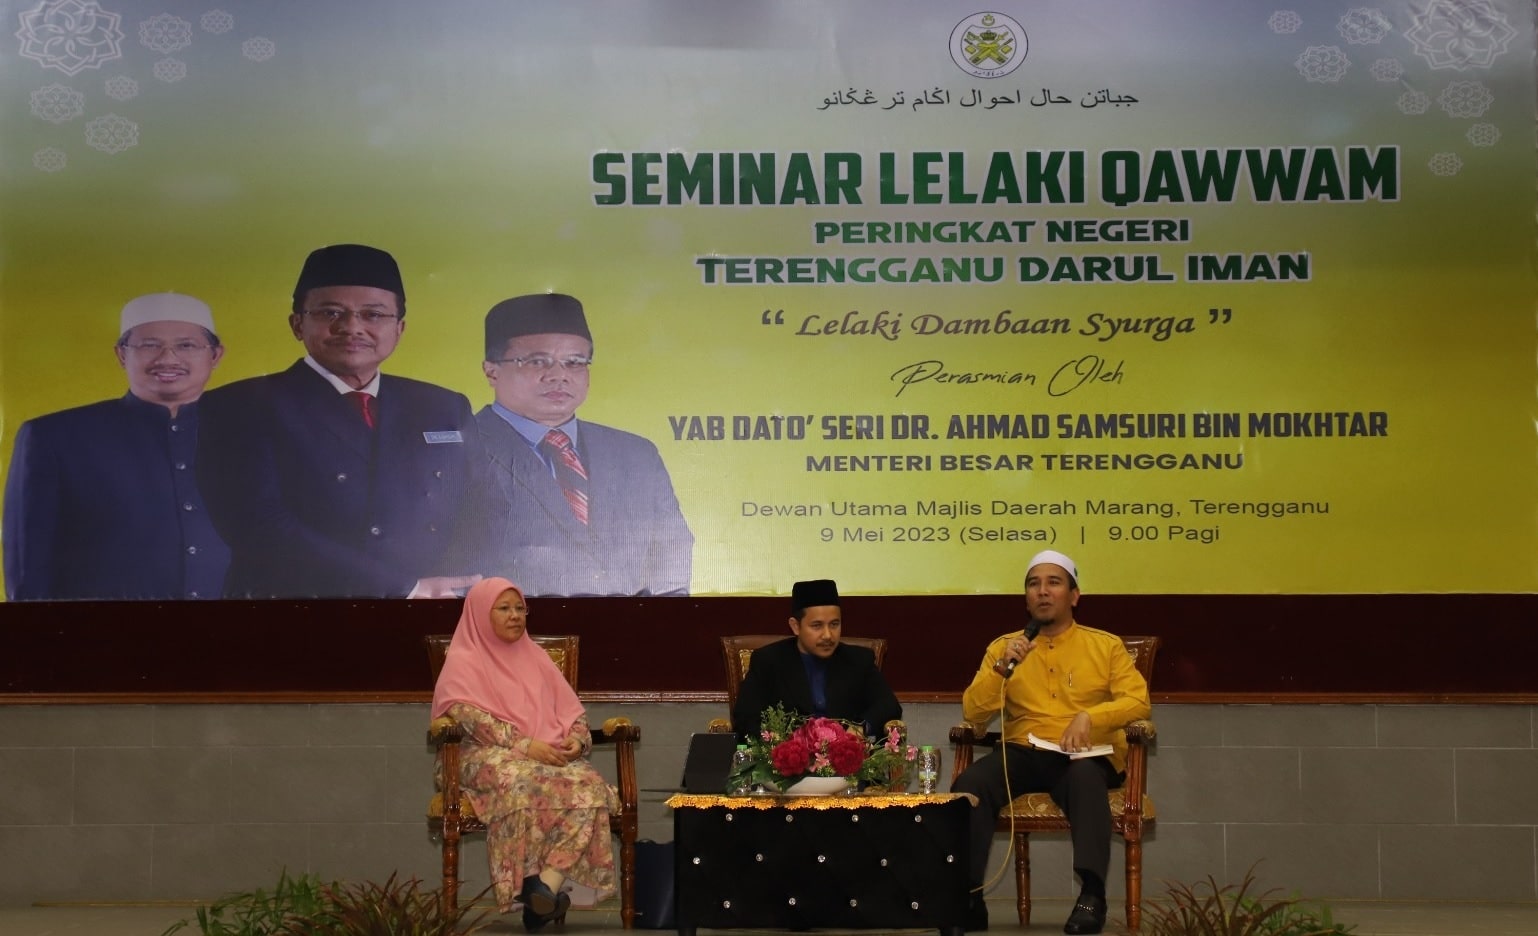 Seminar Lelaki Qawwam Peringkat Negeri Terengganu Darul Iman Lelaki Dambaan Syurga6 min